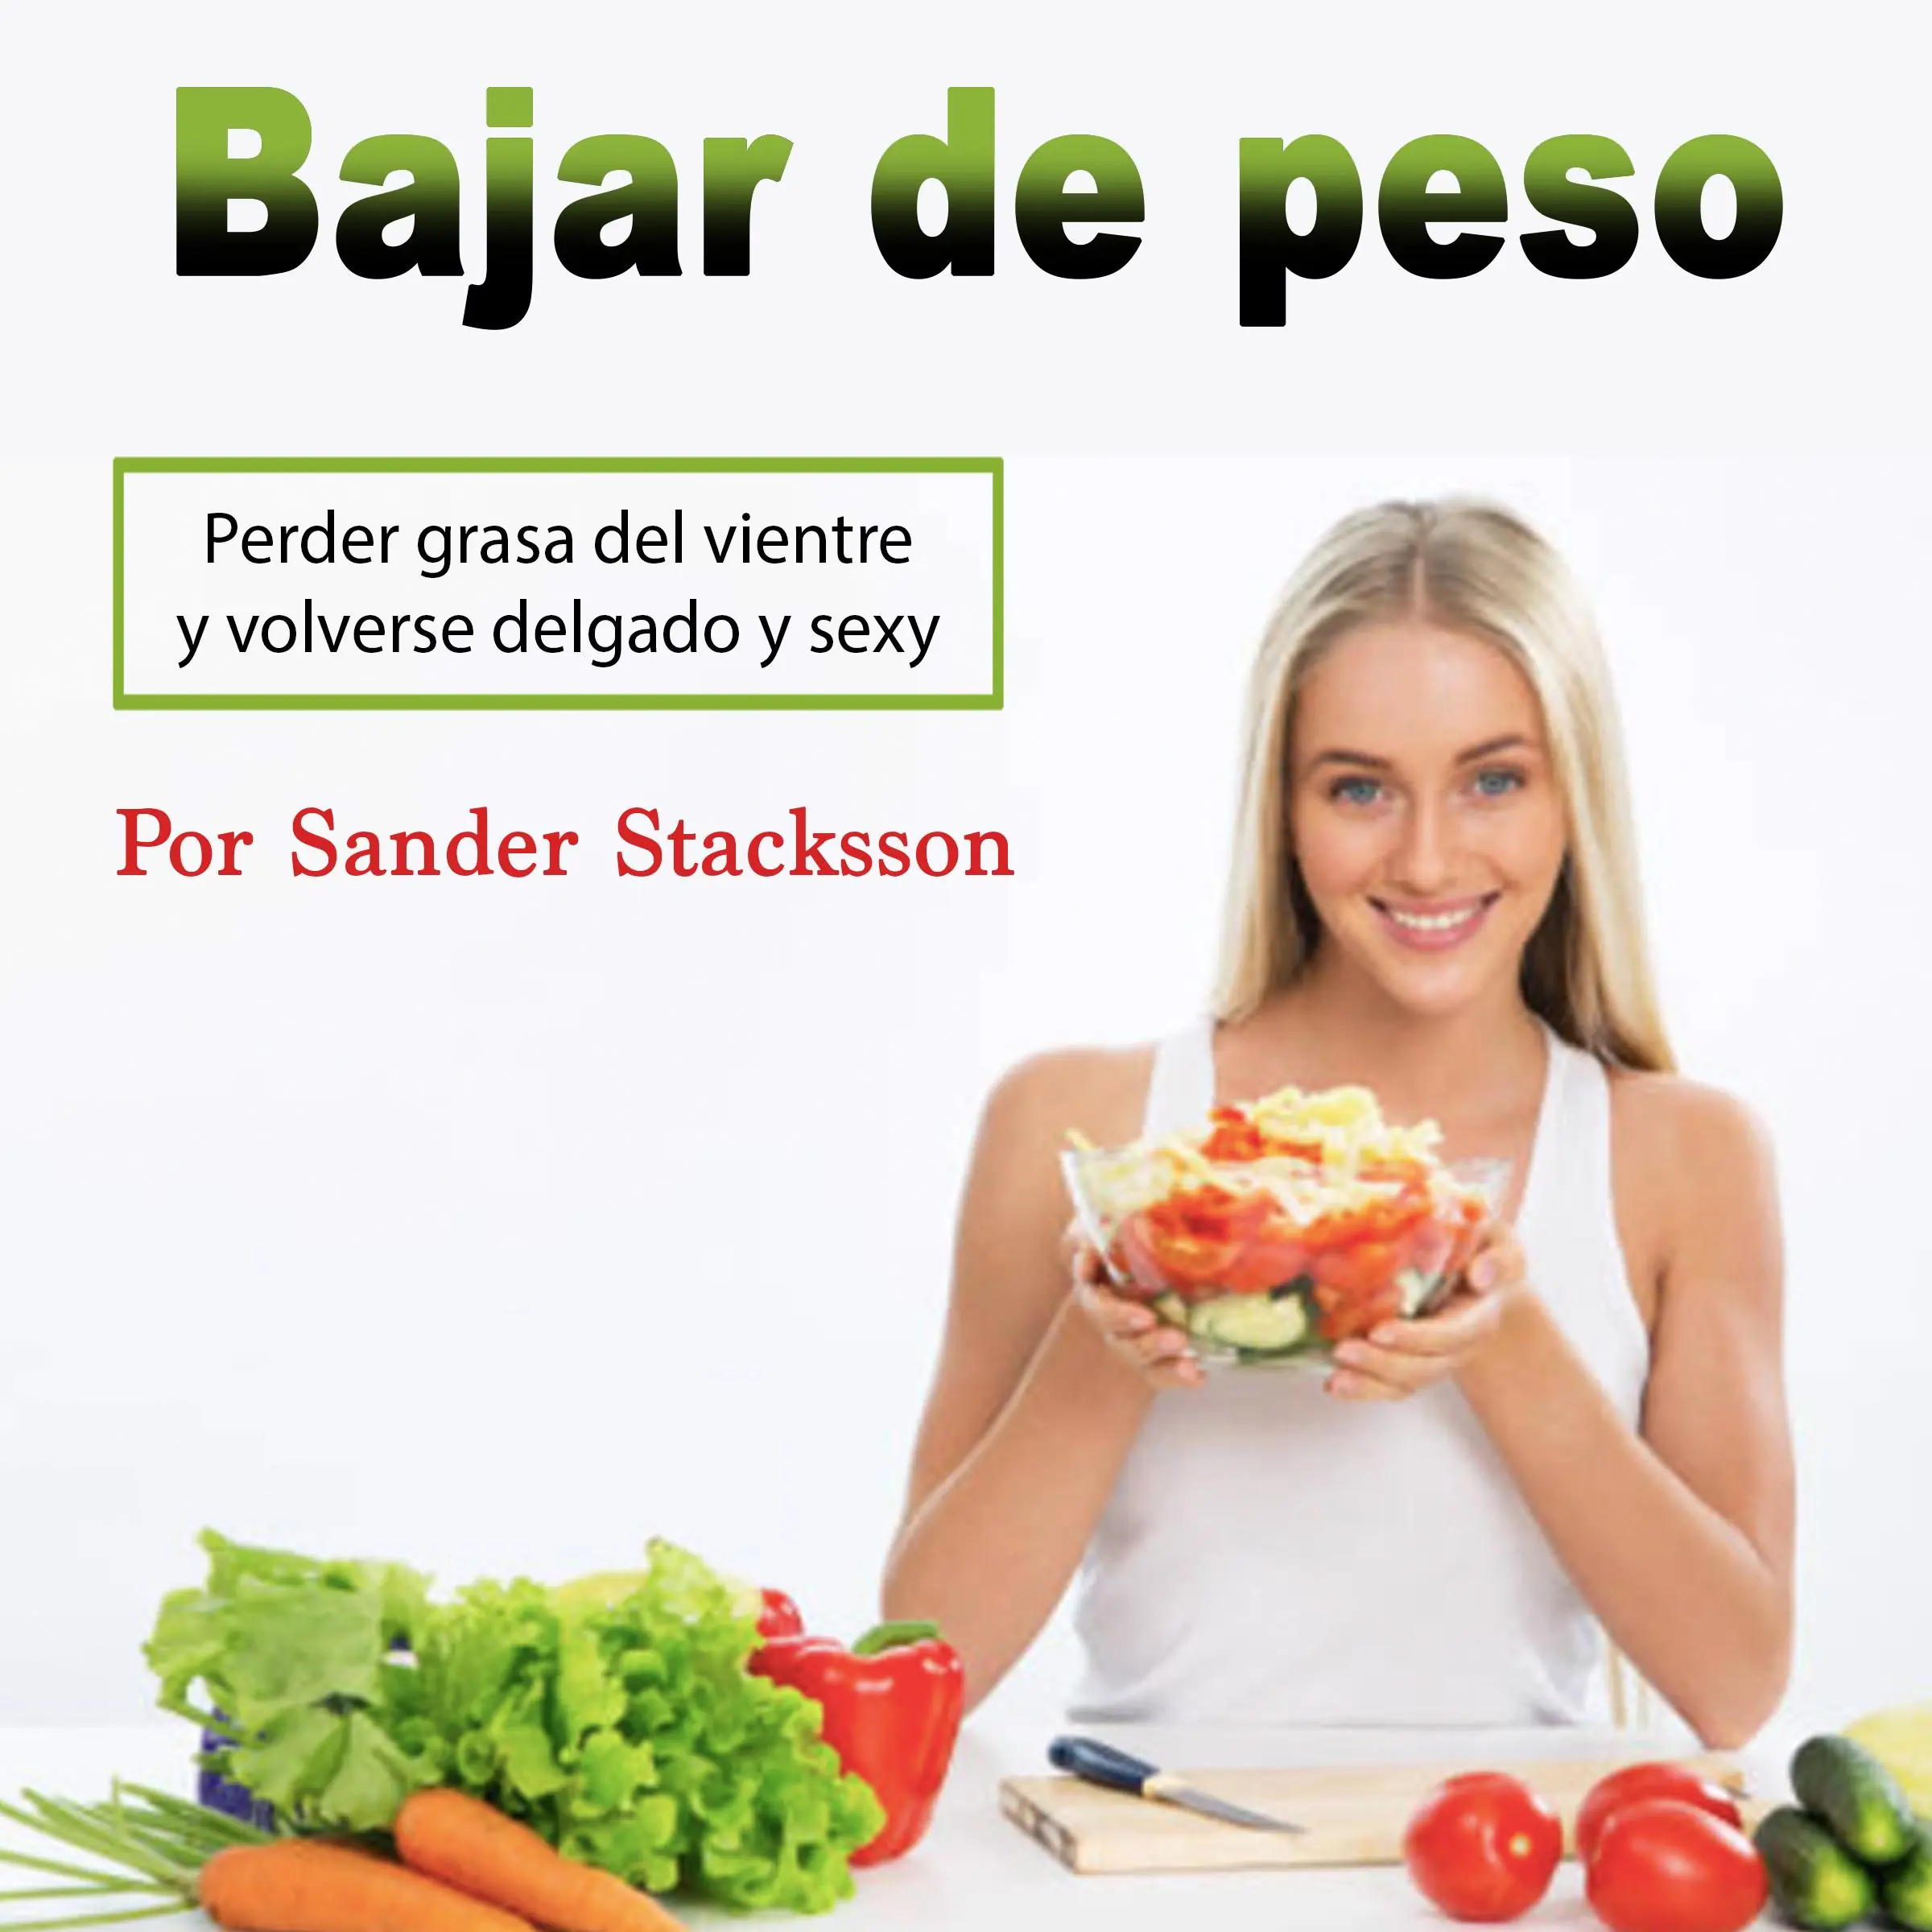 Bajar de peso: Perder grasa del vientre y volverse delgado y sexy (Spanish Edition) Audiobook by Sander Stacksson